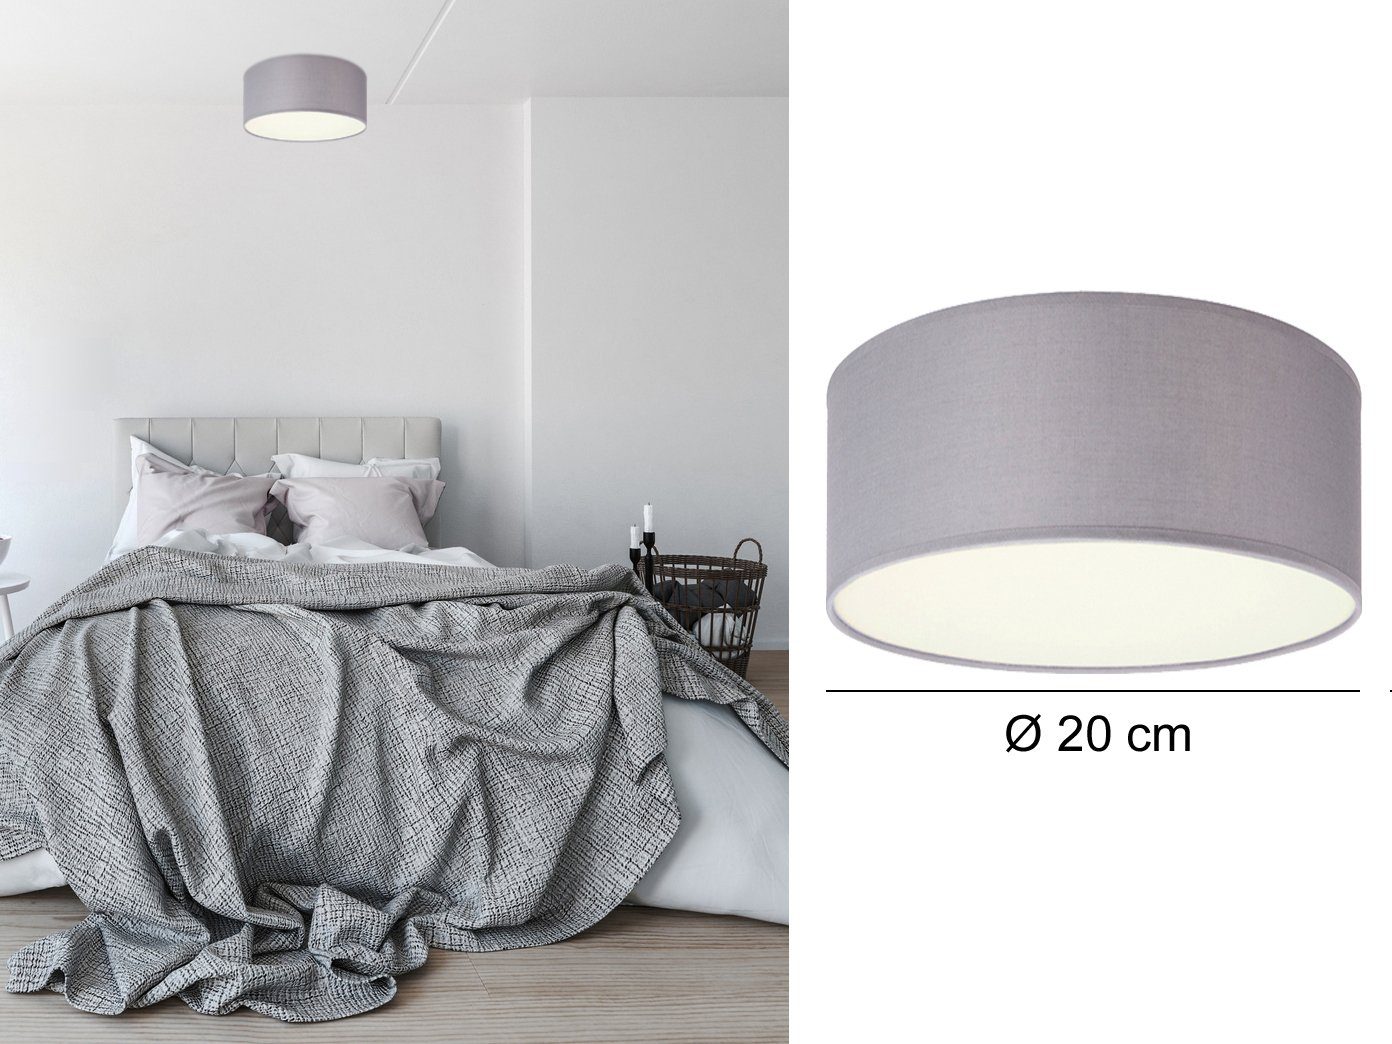 3 x 8,5 Watt LED Leuchtmittel Decken Lampe Ø60 cm Stoff Wohn Schlaf Raum inkl 